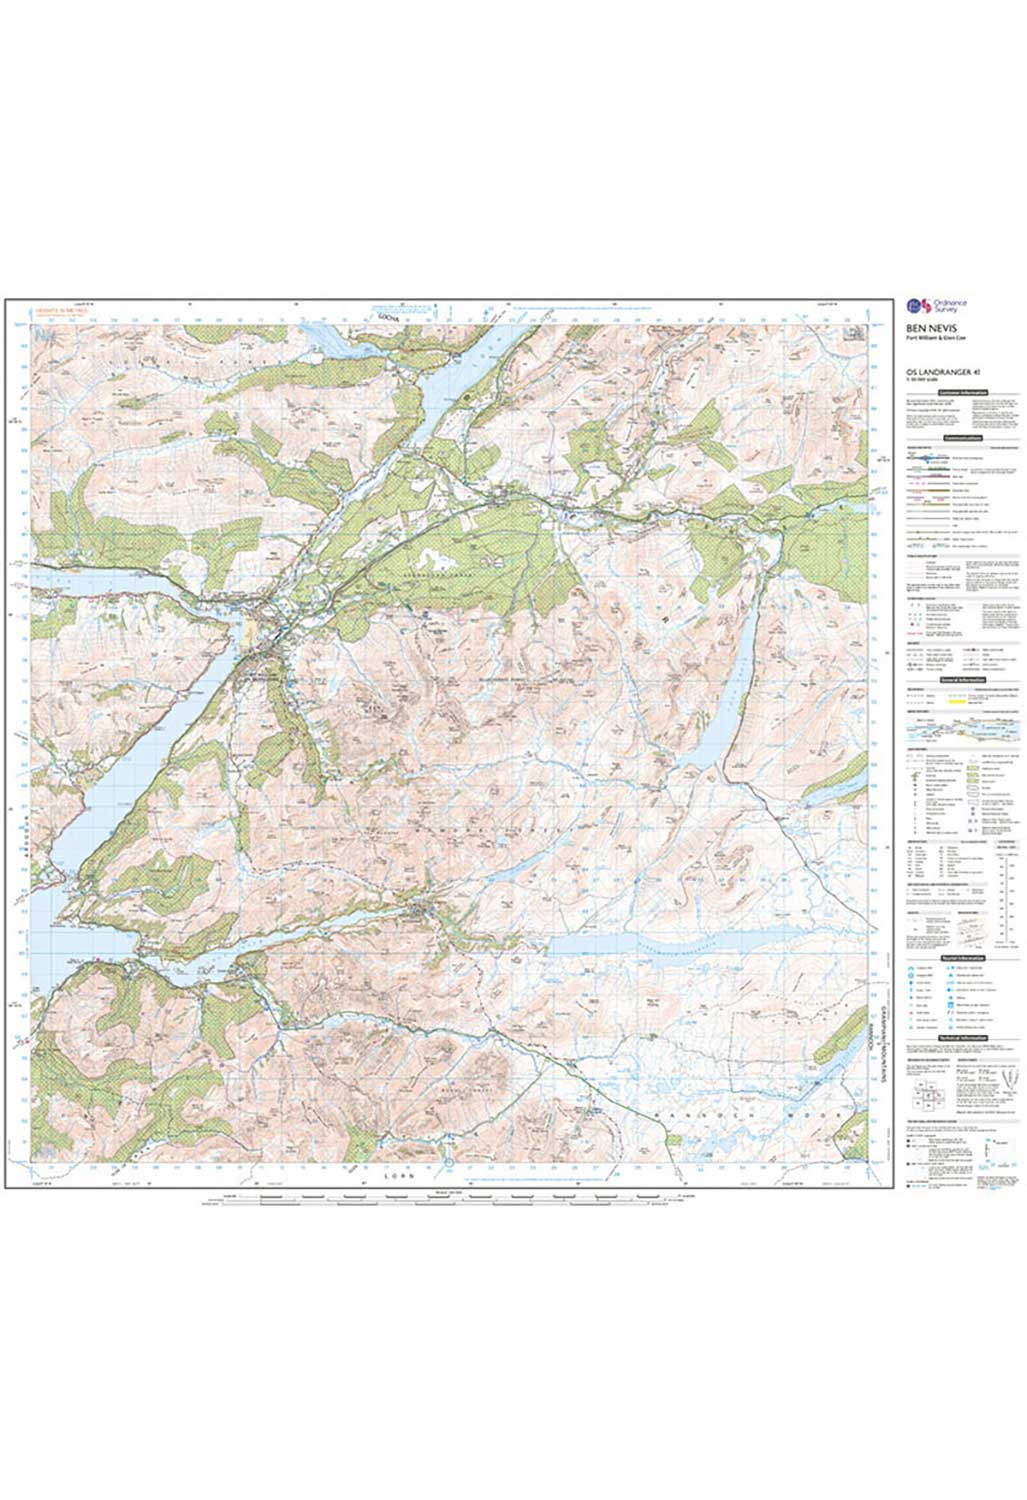 Ordnance Survey Ben Nevis, Fort William & Glen Coe - Landranger 41 Map